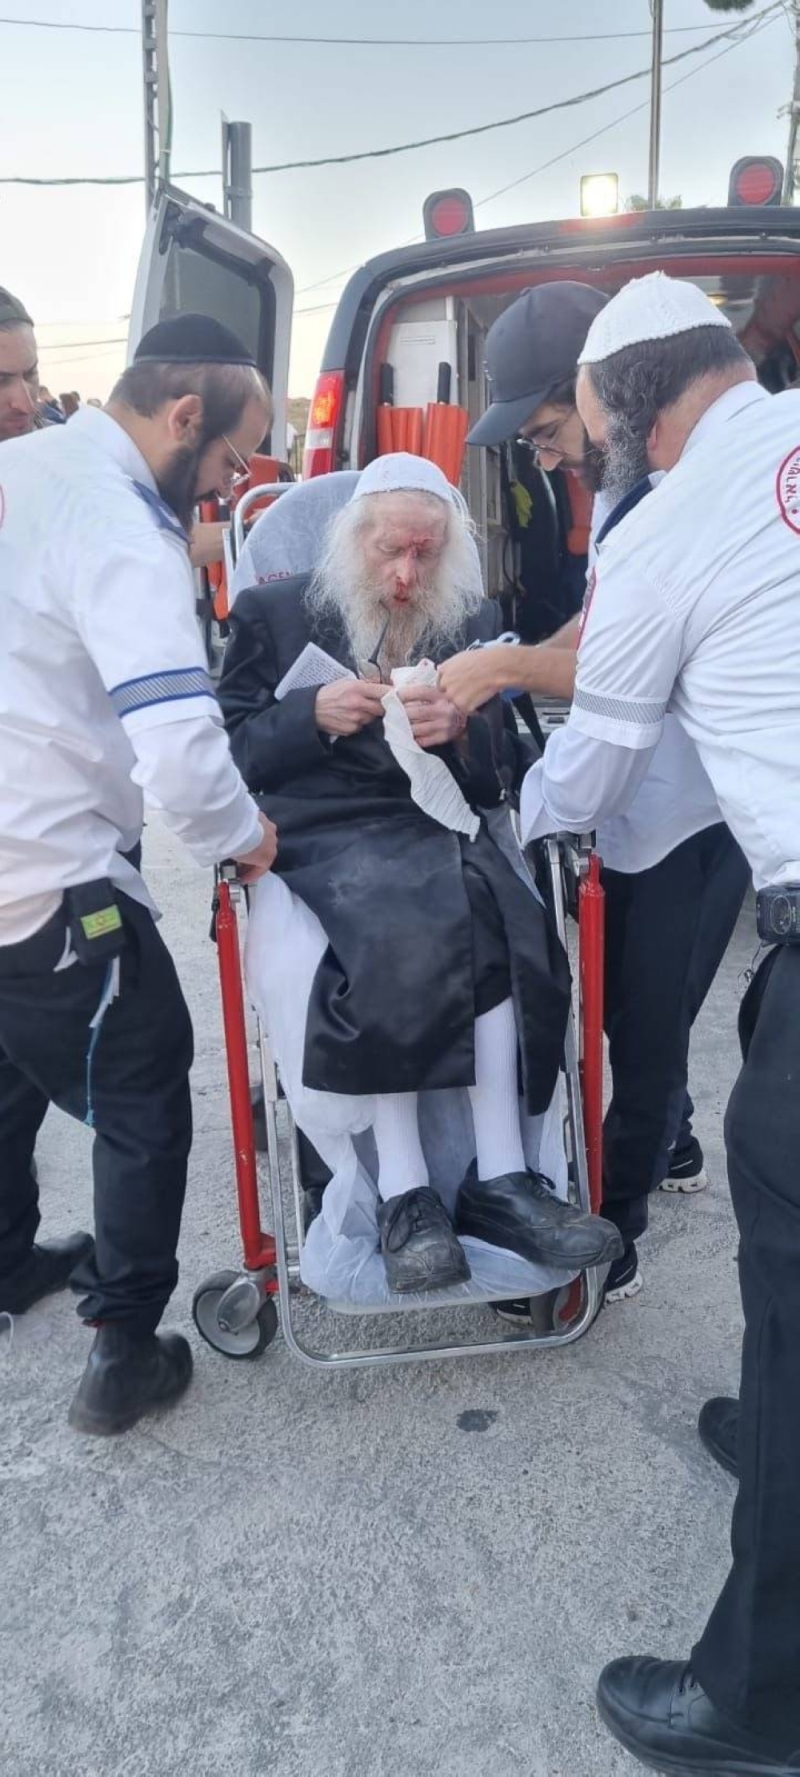 شاهد: شرطي إسرائيلي يدفع رجل دين يهودي بقوة ويسقطه على وجهه أثناء فض تظاهرة في الجليل